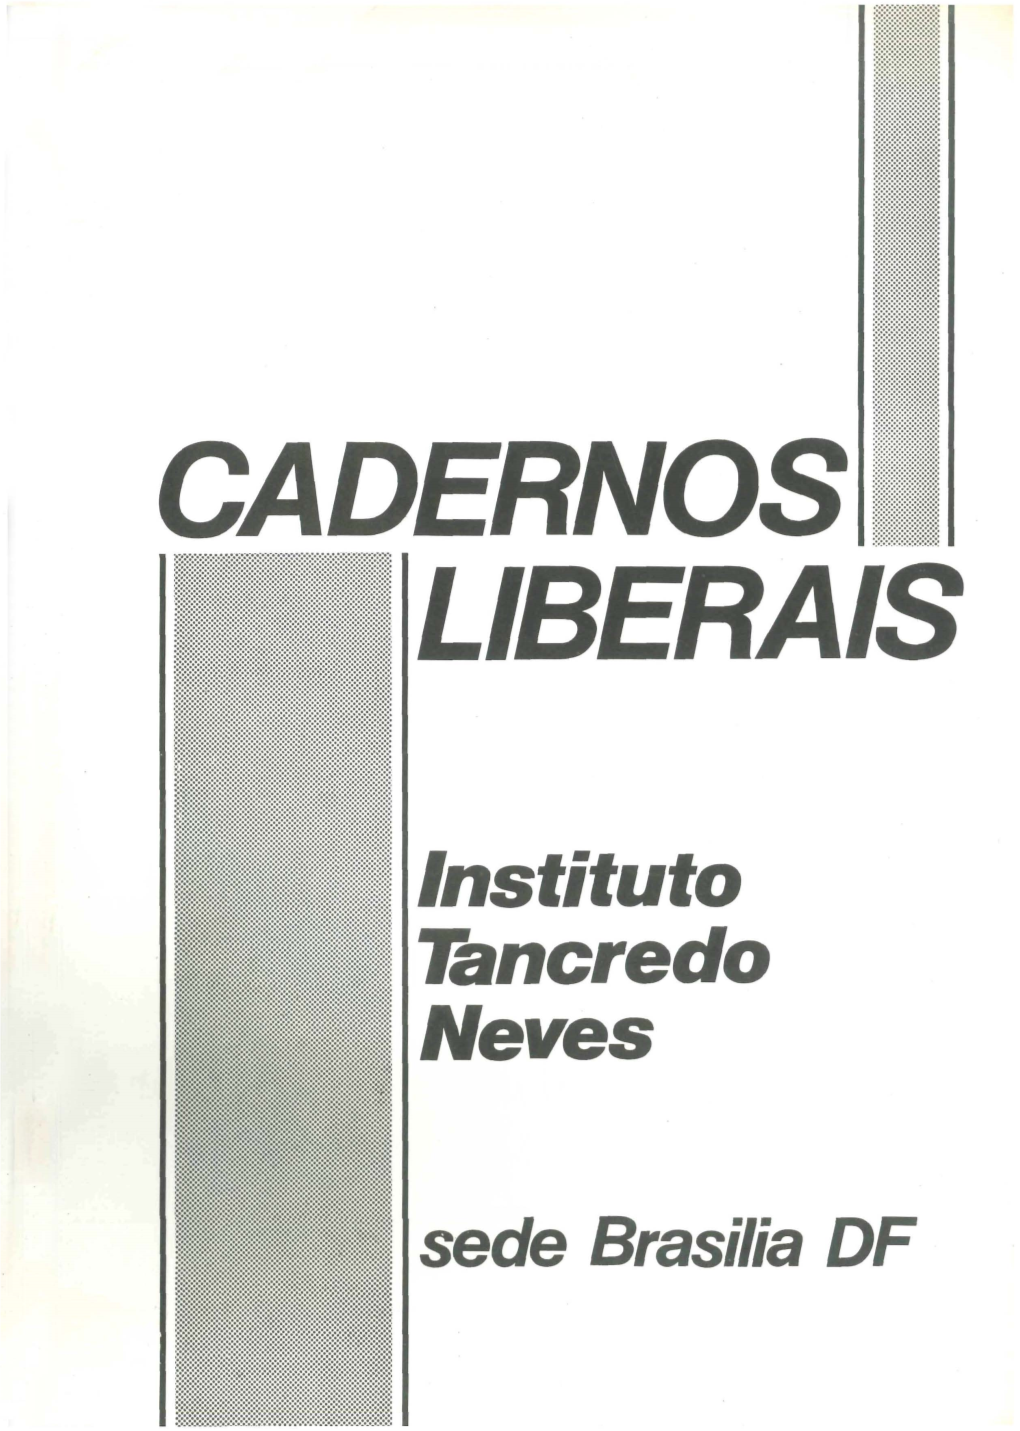 Instituto Tancredo Neves Sede Brasilia DF CADERNOS LIBERAIS São Publicações Internas Do Instituto Tancredo Neves